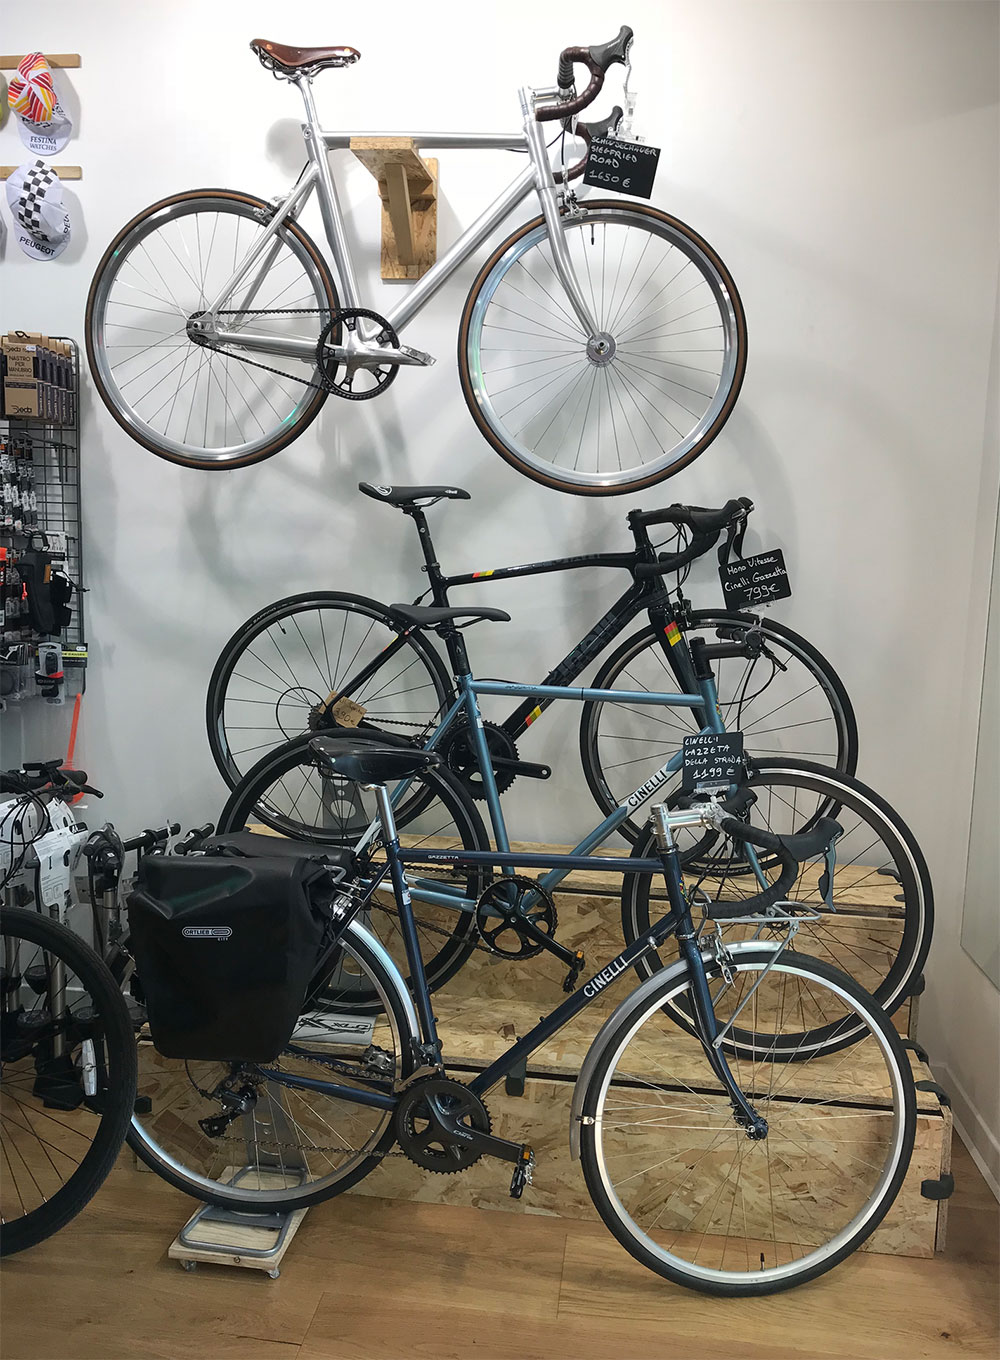 L'Hirondelle Bike Shop, le nouveau magasin de vélos Paris République